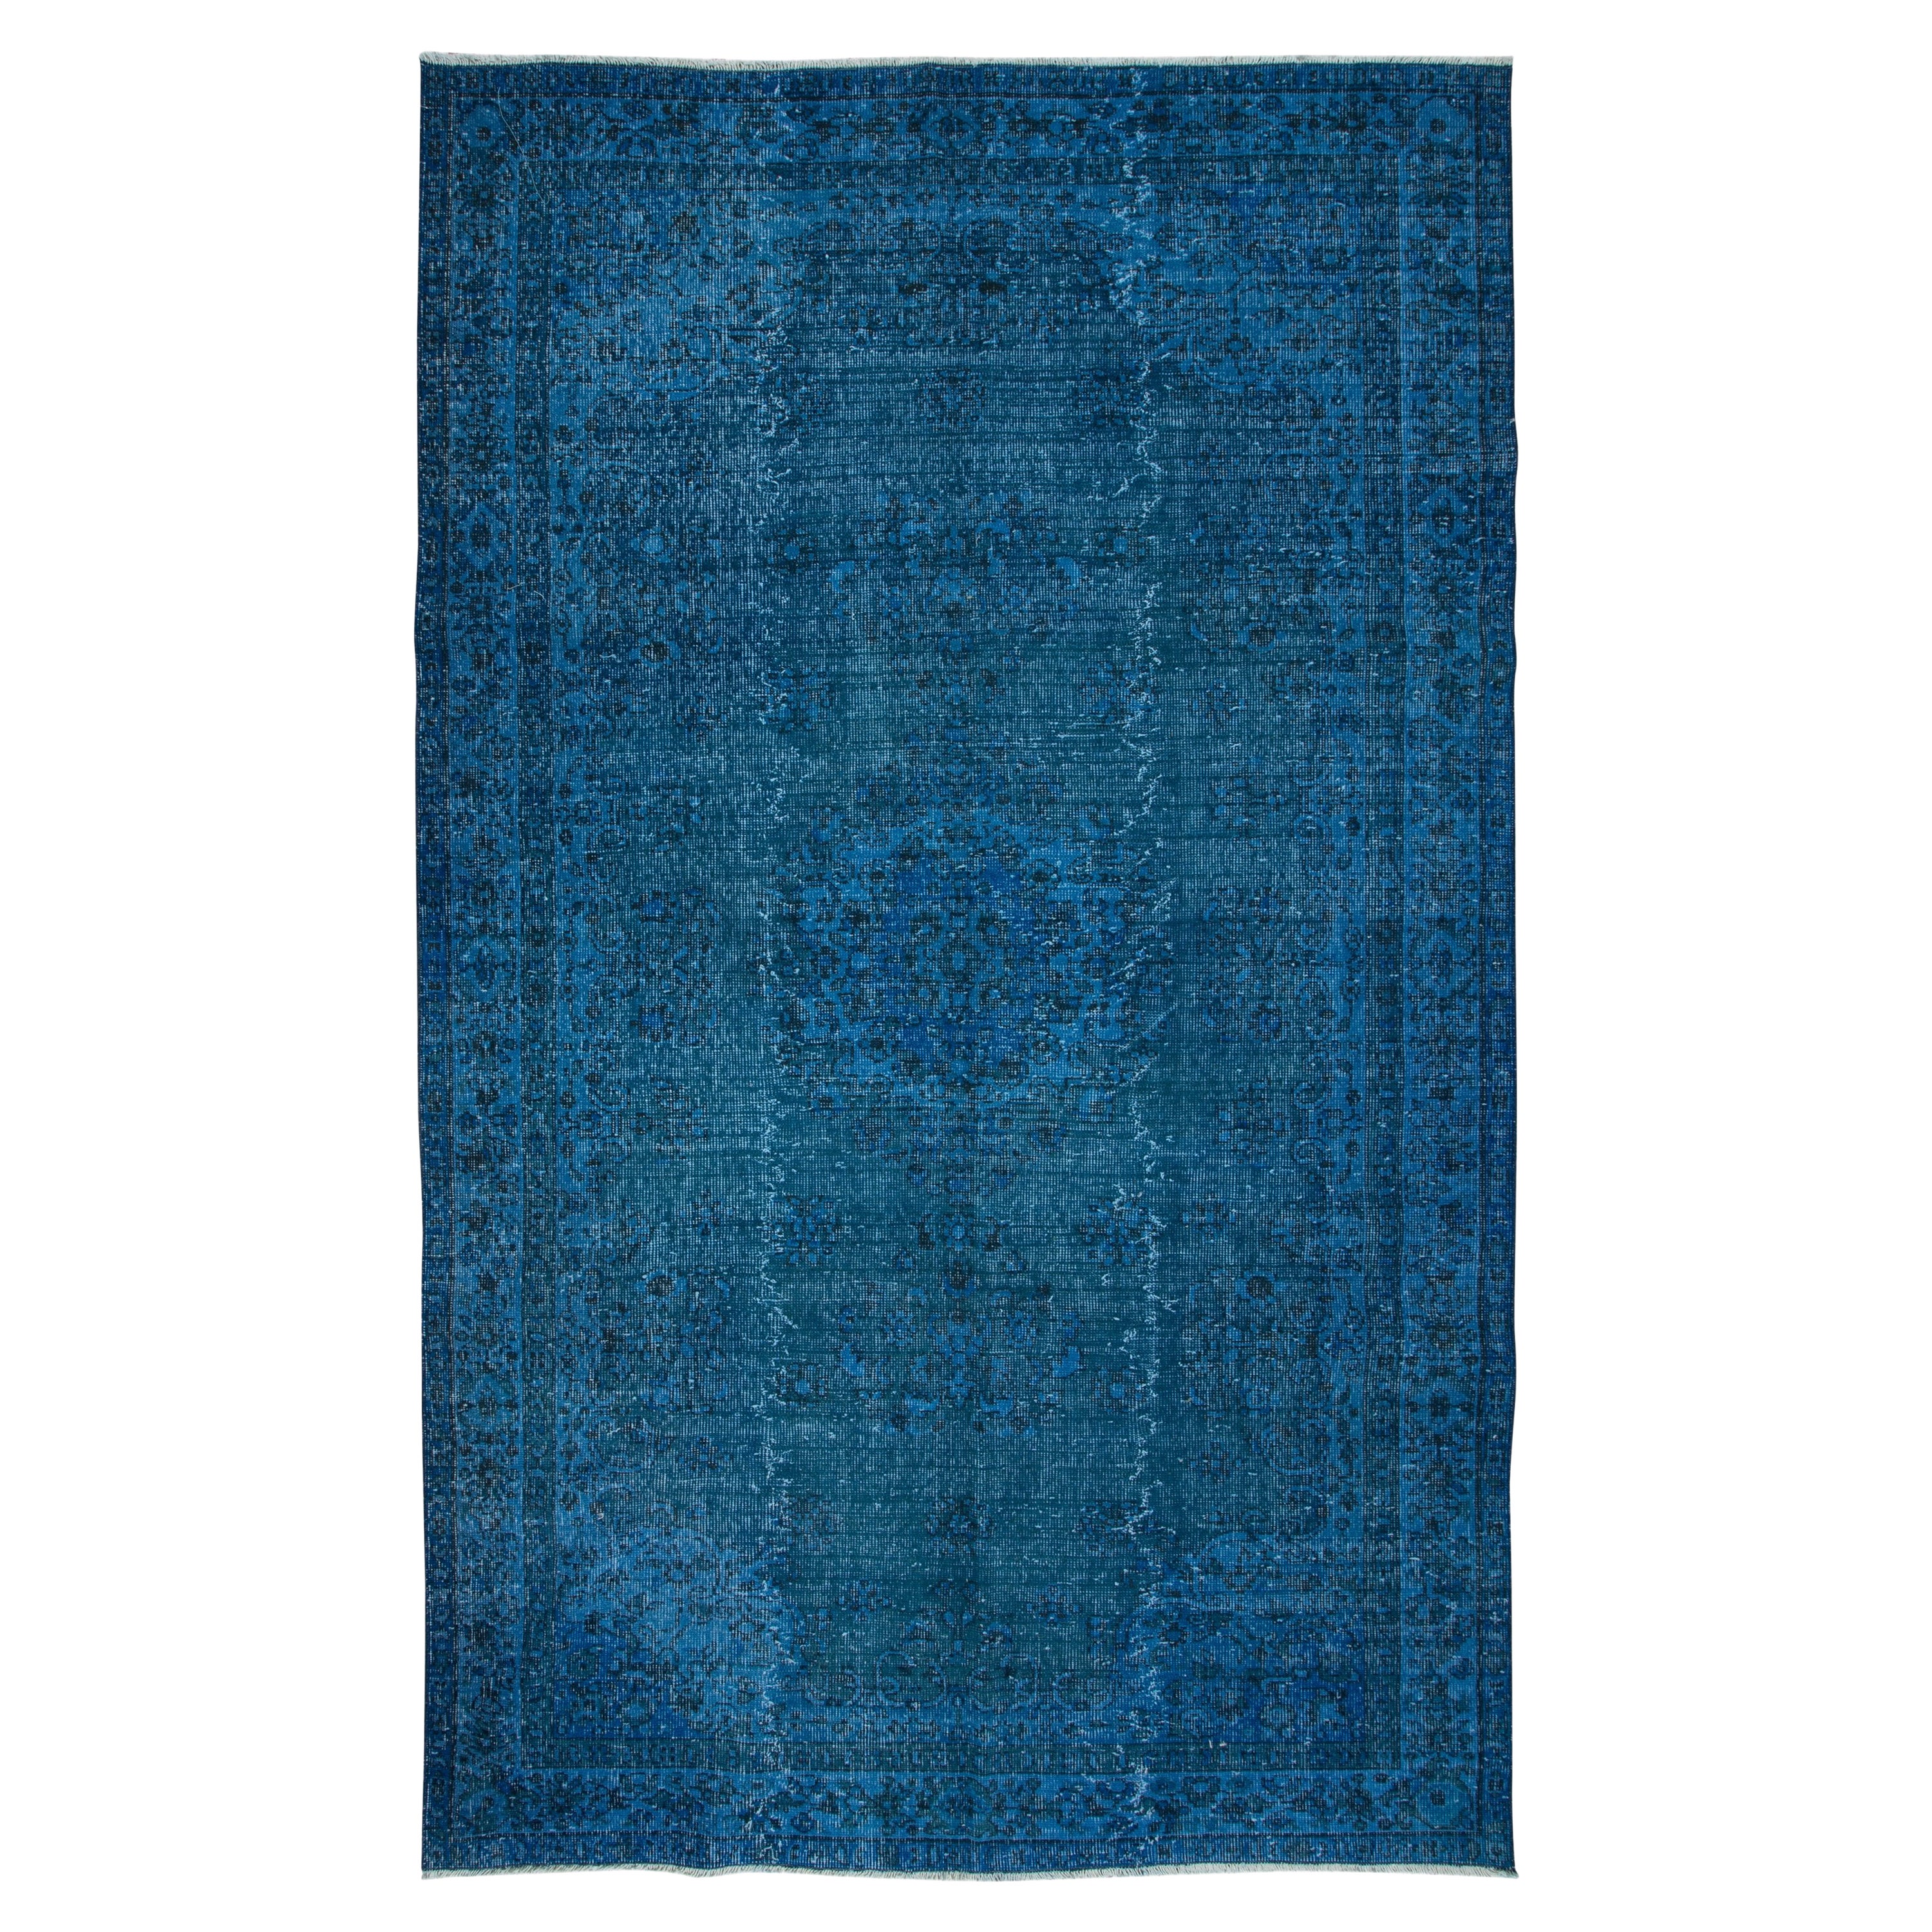 5.6x9 Ft Blue Modern Rug, Room-Size Redyed Carpet, Handmade Living Room Carpet For Sale